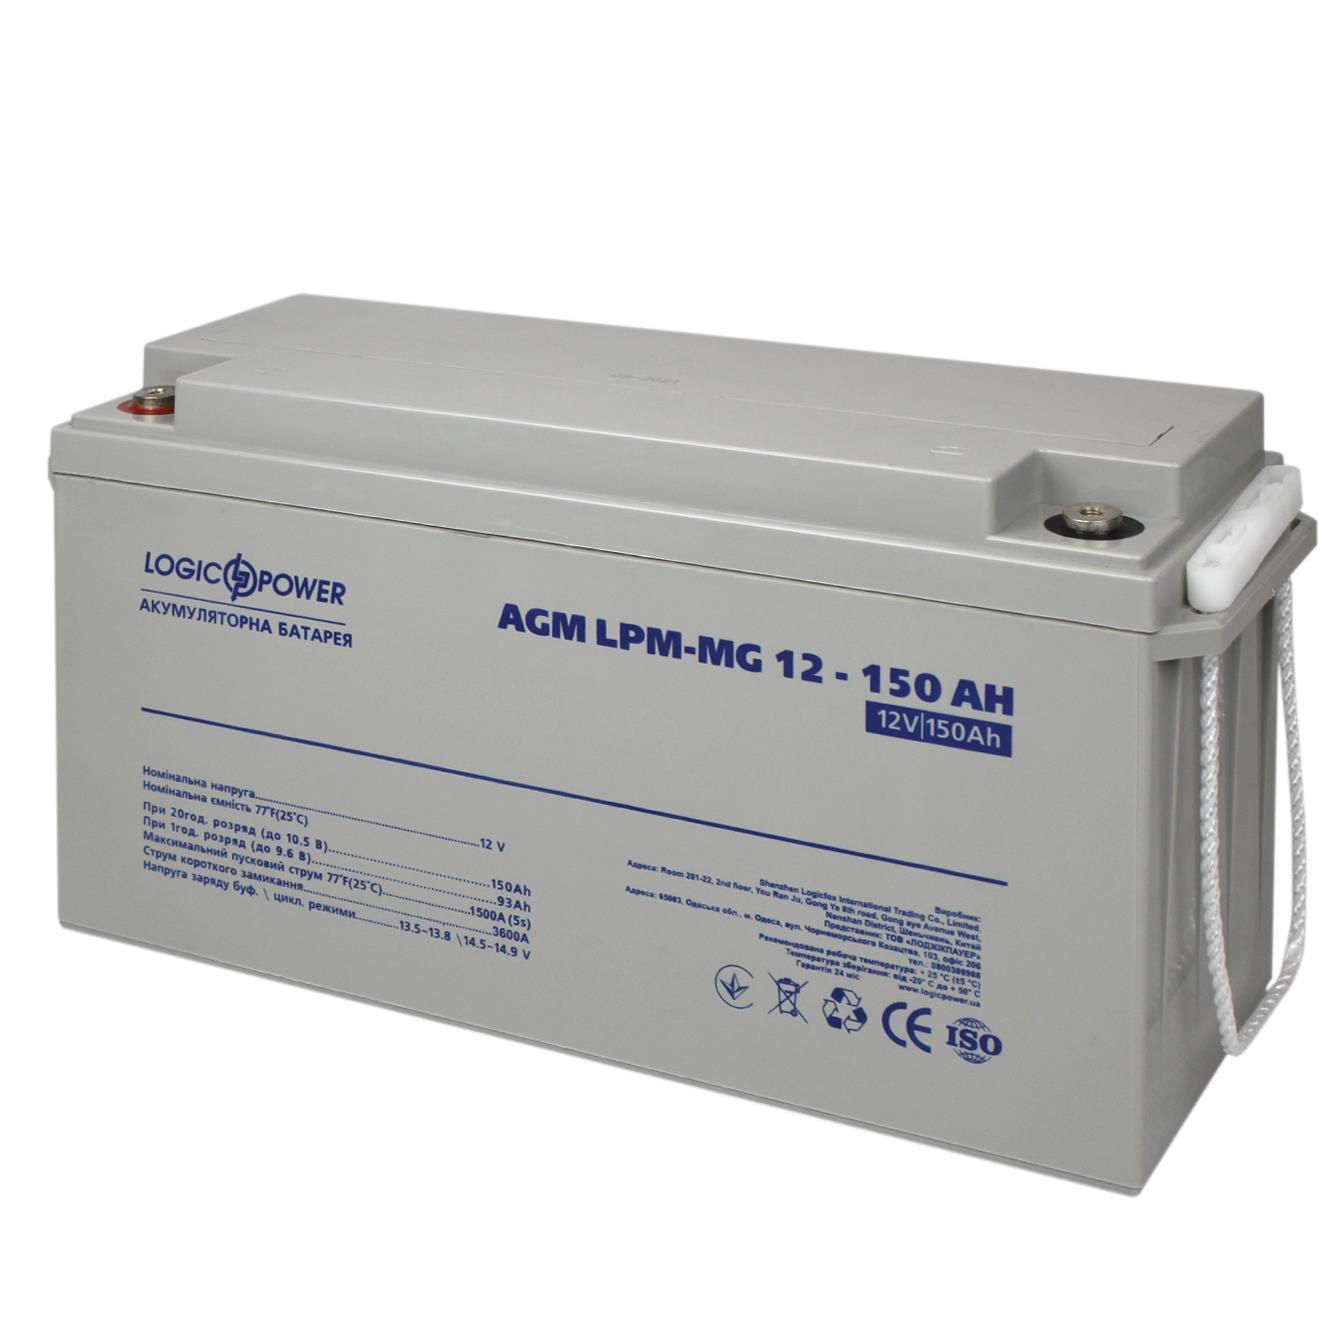 Купить аккумулятор 150 a·h LogicPower LPM-MG 12V - 150 Ah (4197) в Киеве